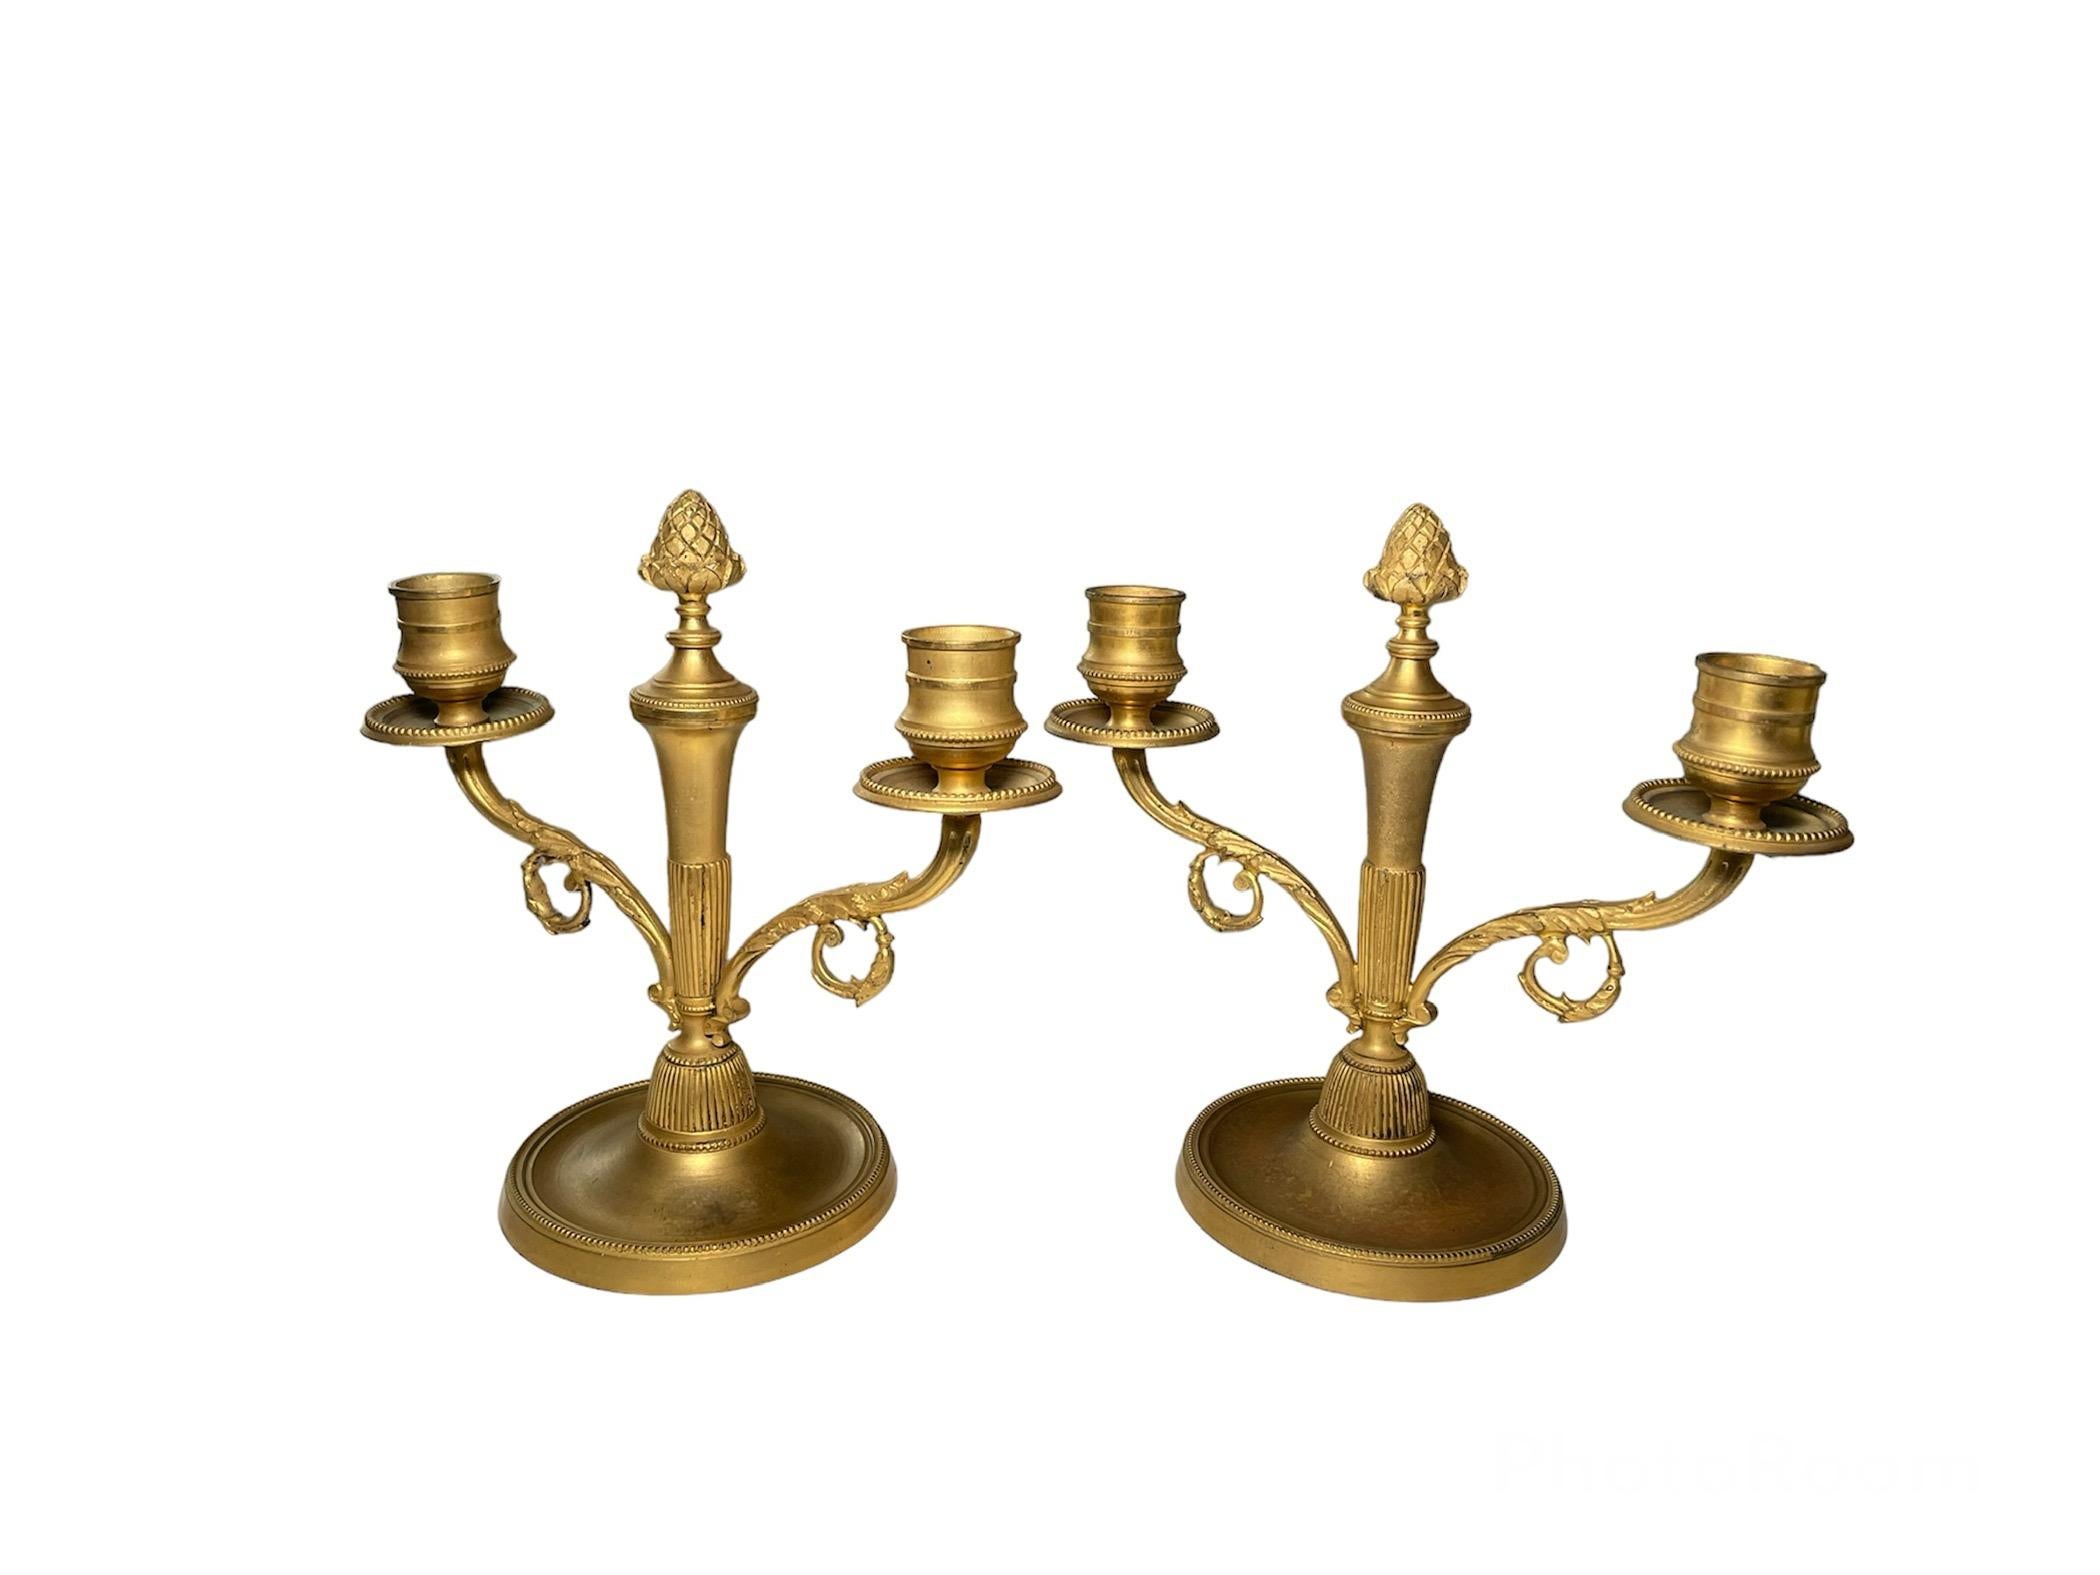 Dies ist ein Paar vergoldeter bronzierter Metall-Doppelkerzenhalter. Sie stellen doppelte Kerzenhalter dar, die mit einigen Akanthusblättern in den Zweigen verziert sind und in deren Mitte Tannenzapfen als Abschluss dienen. Sie stehen auf einem